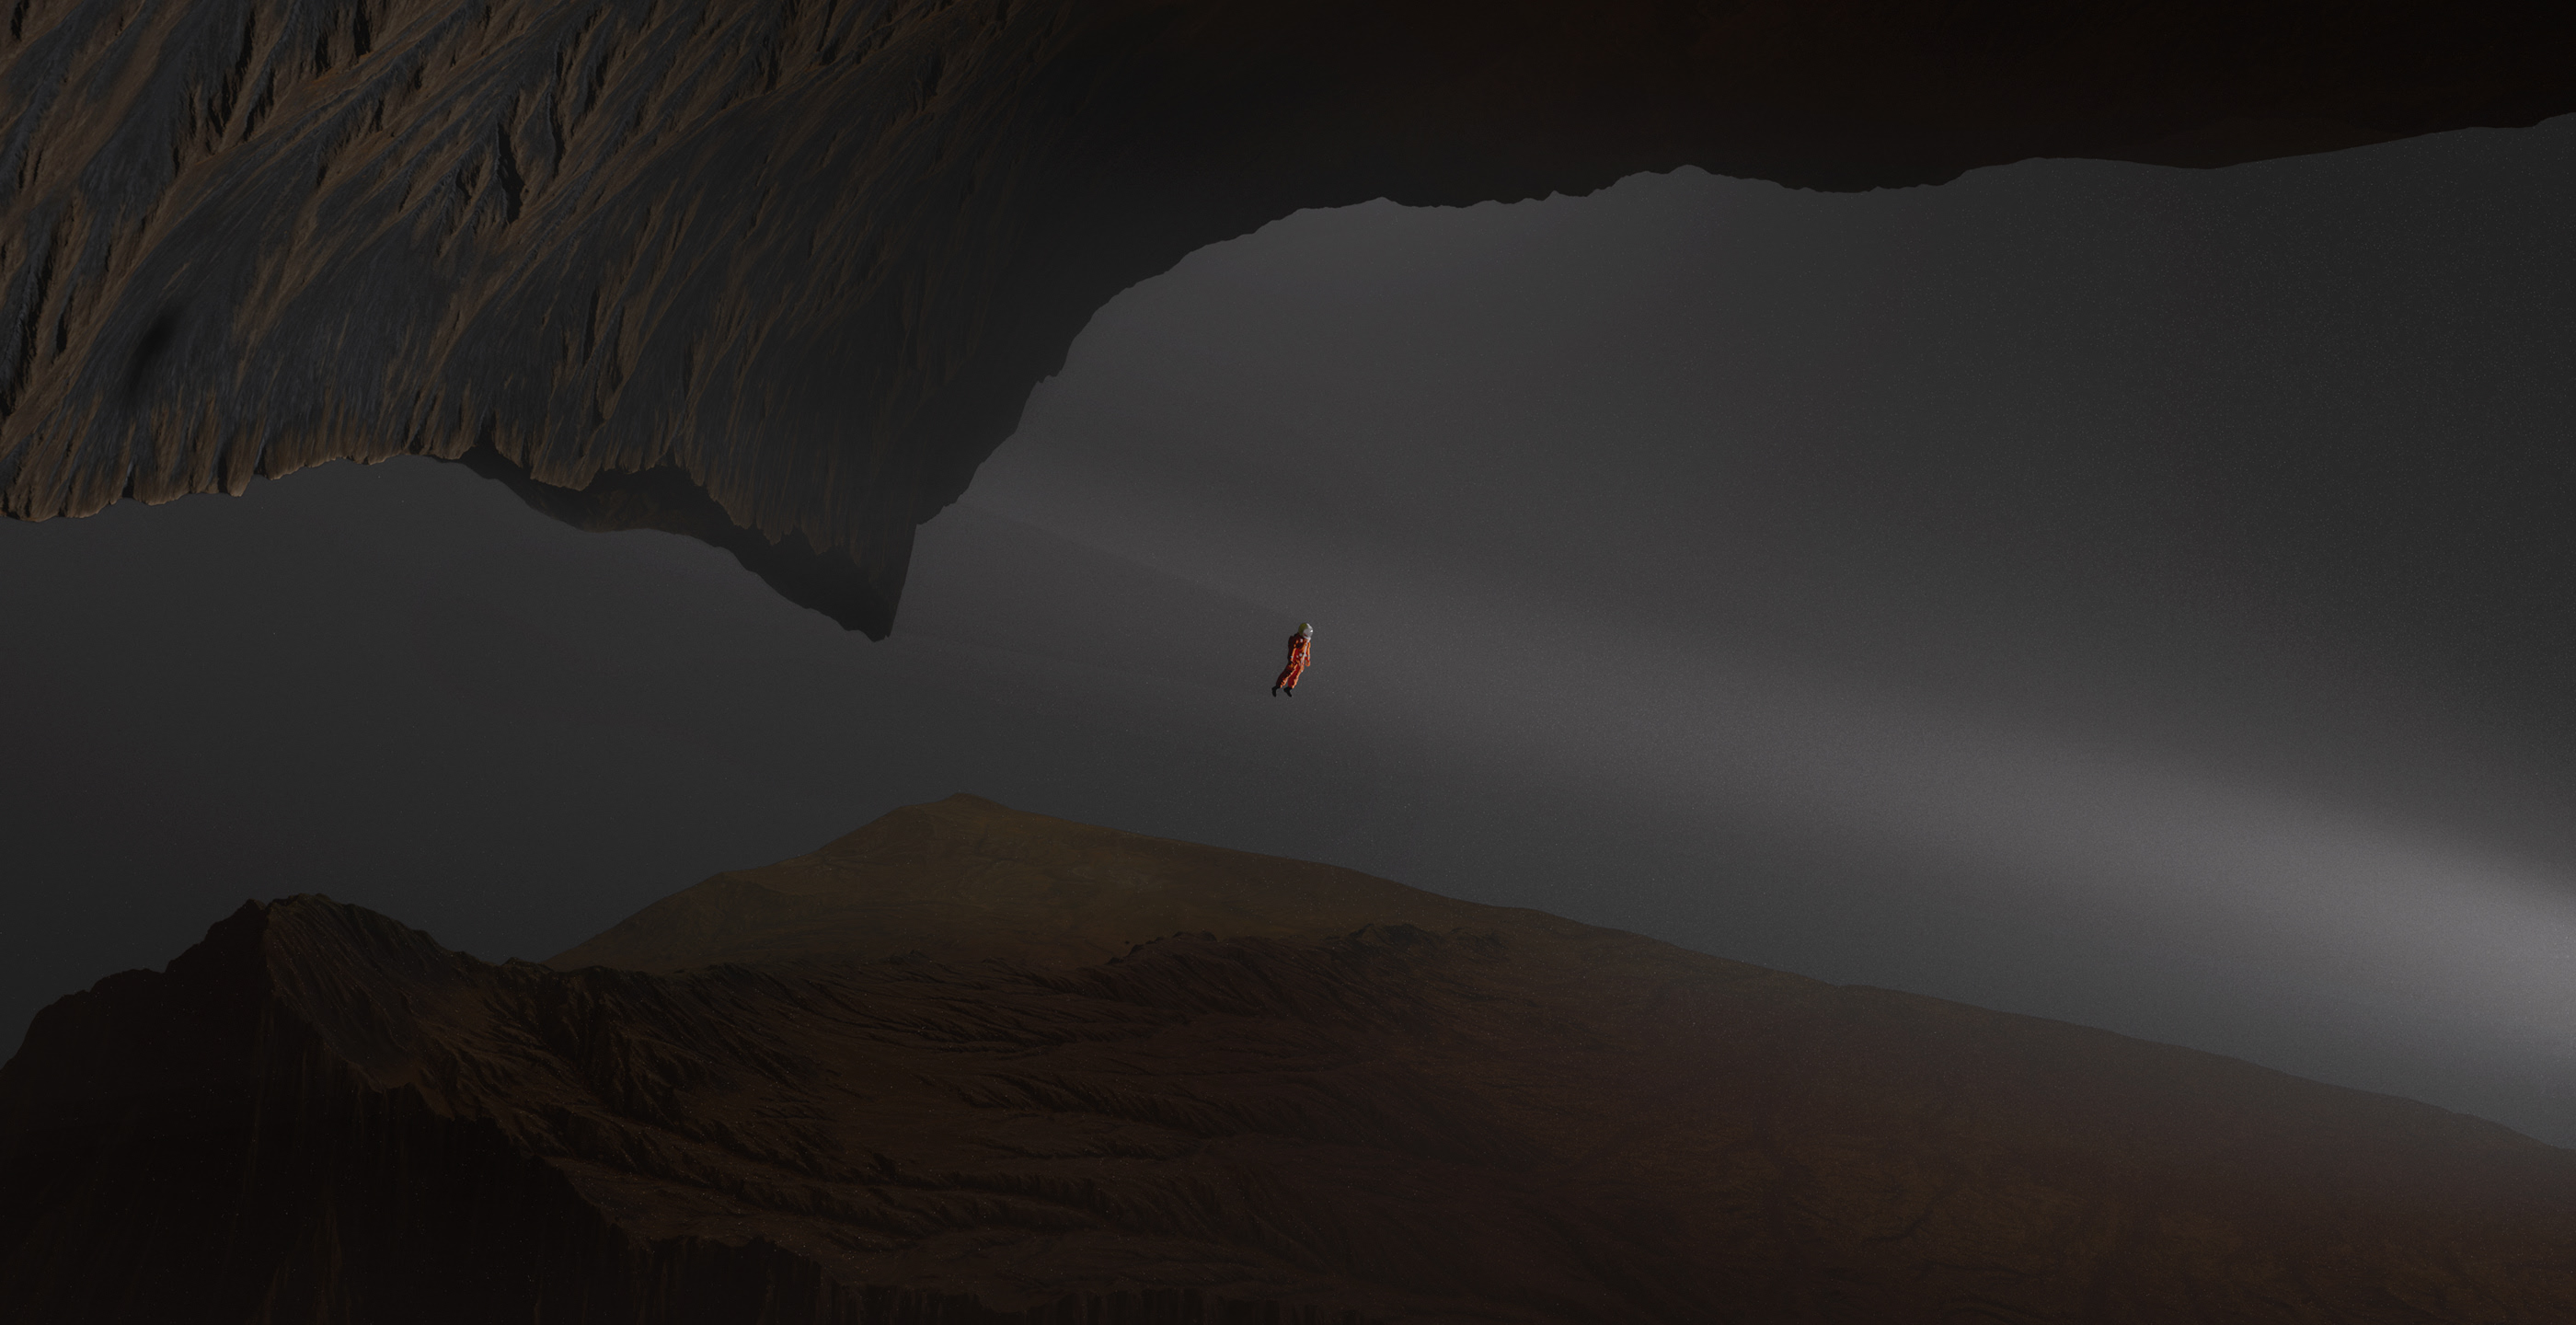 Digital Digital Art Artwork Illustration 3D Science Fiction Cave Nature Astronaut Spacesuit Rock For 2800x1440